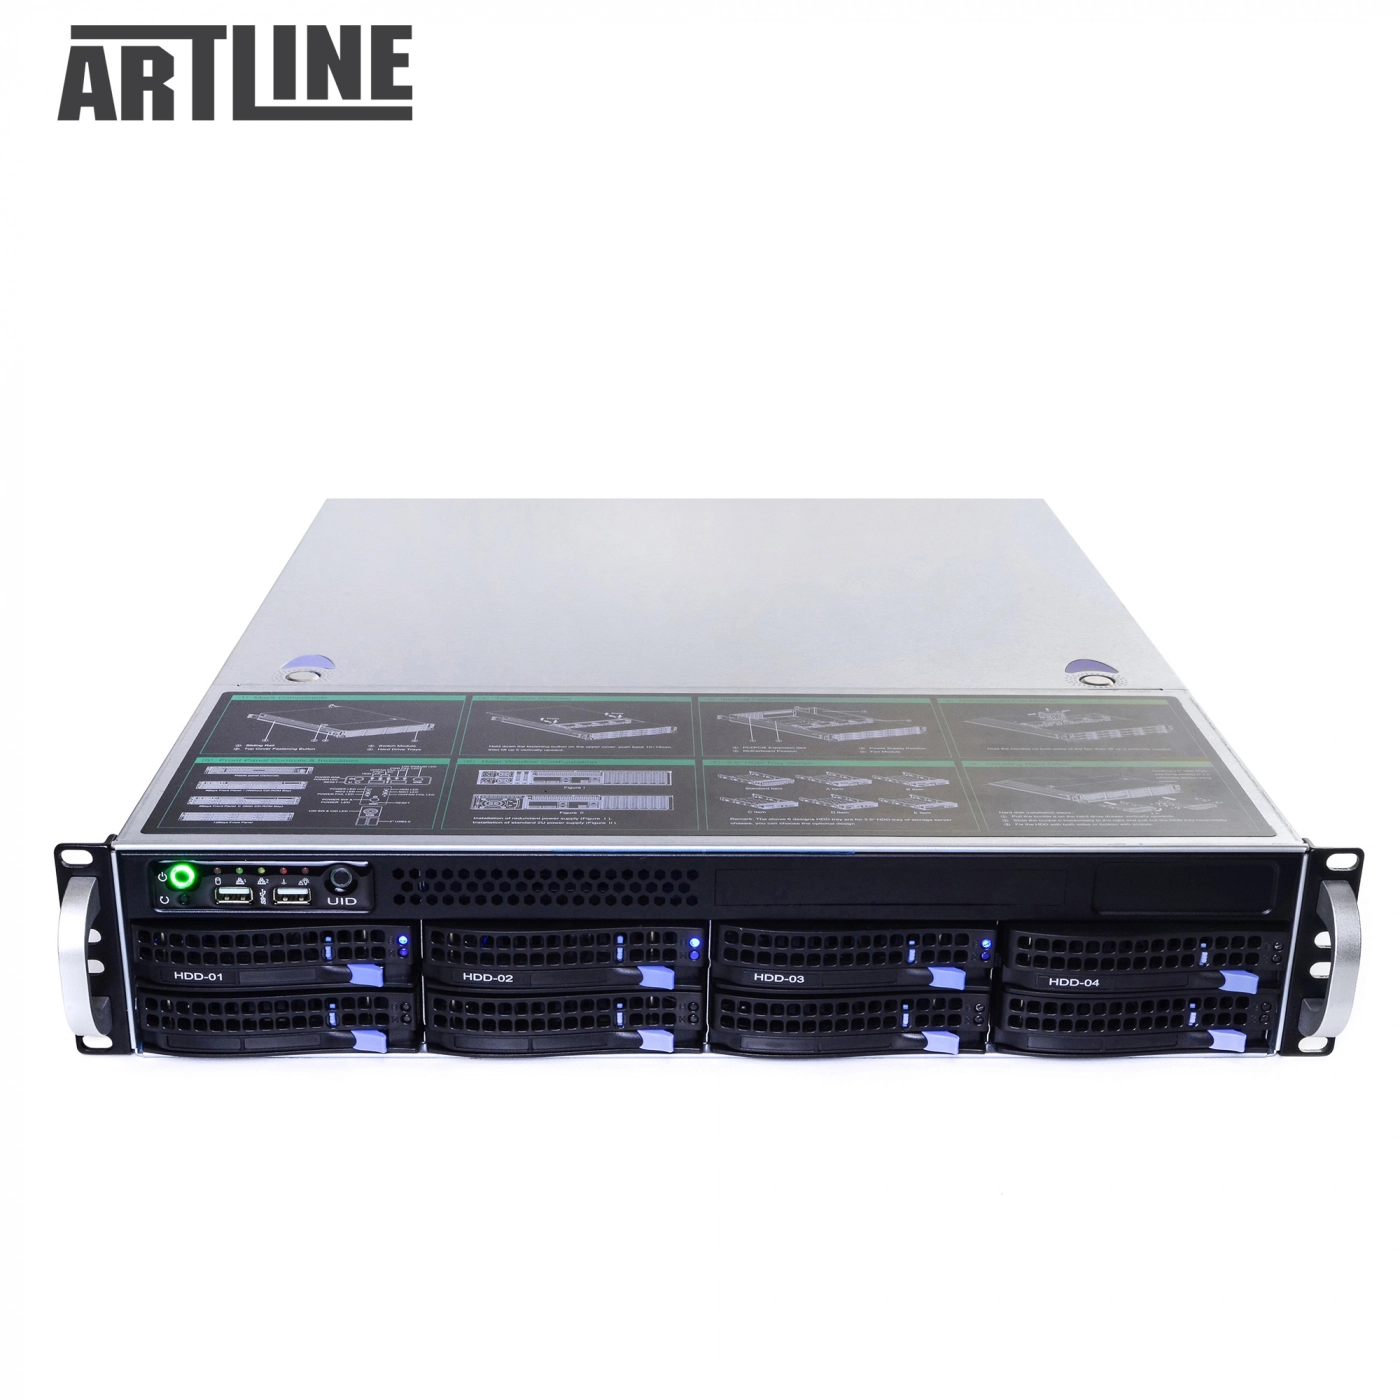 Купить Сервер ARTLINE Business R39v05 - фото 10